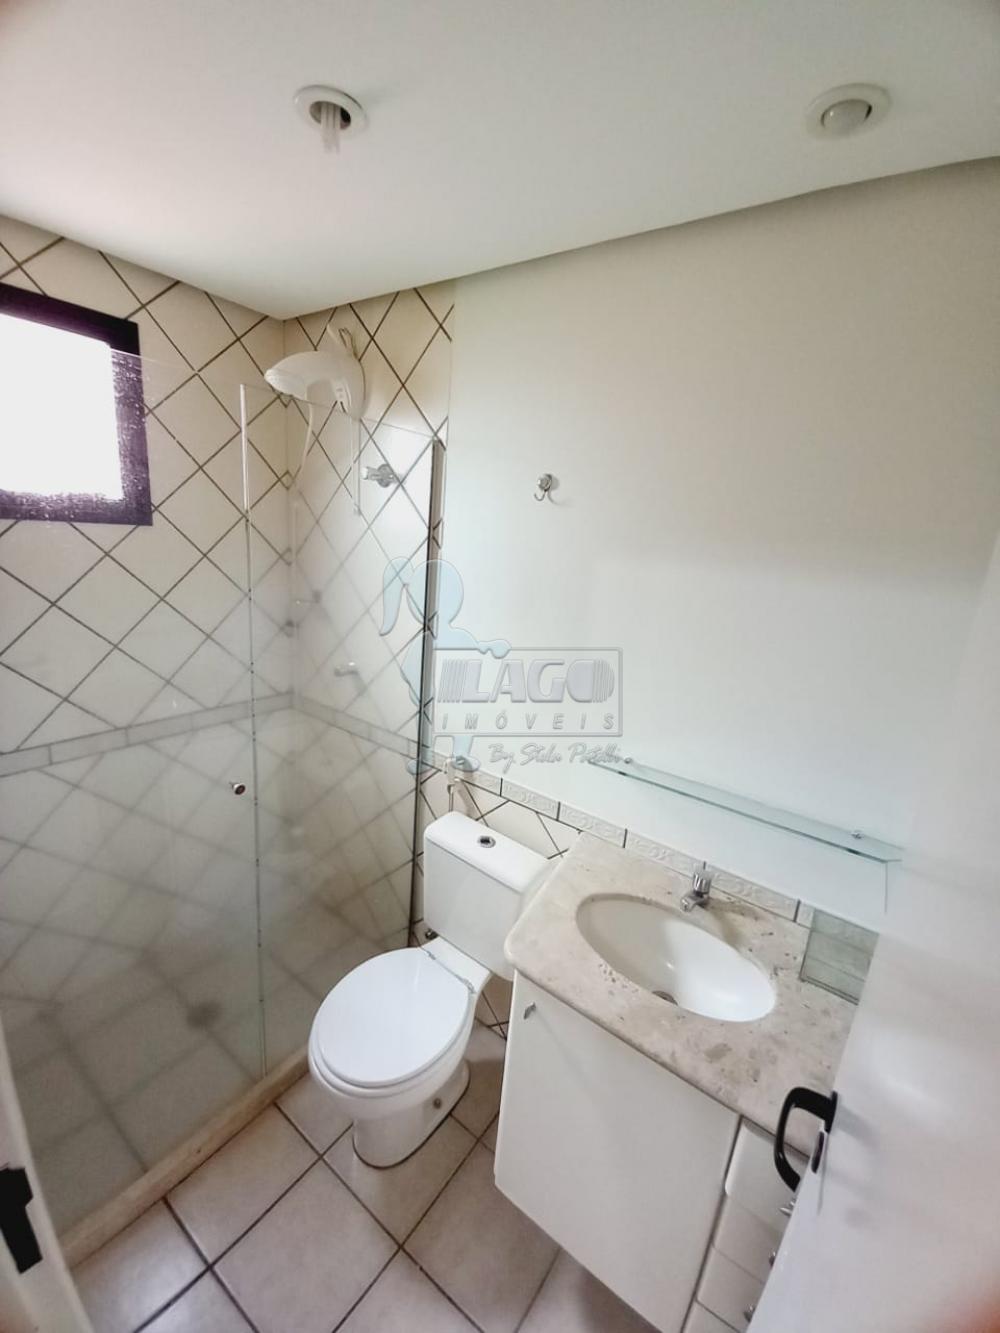 Alugar Apartamentos / Padrão em Ribeirão Preto R$ 1.650,00 - Foto 13